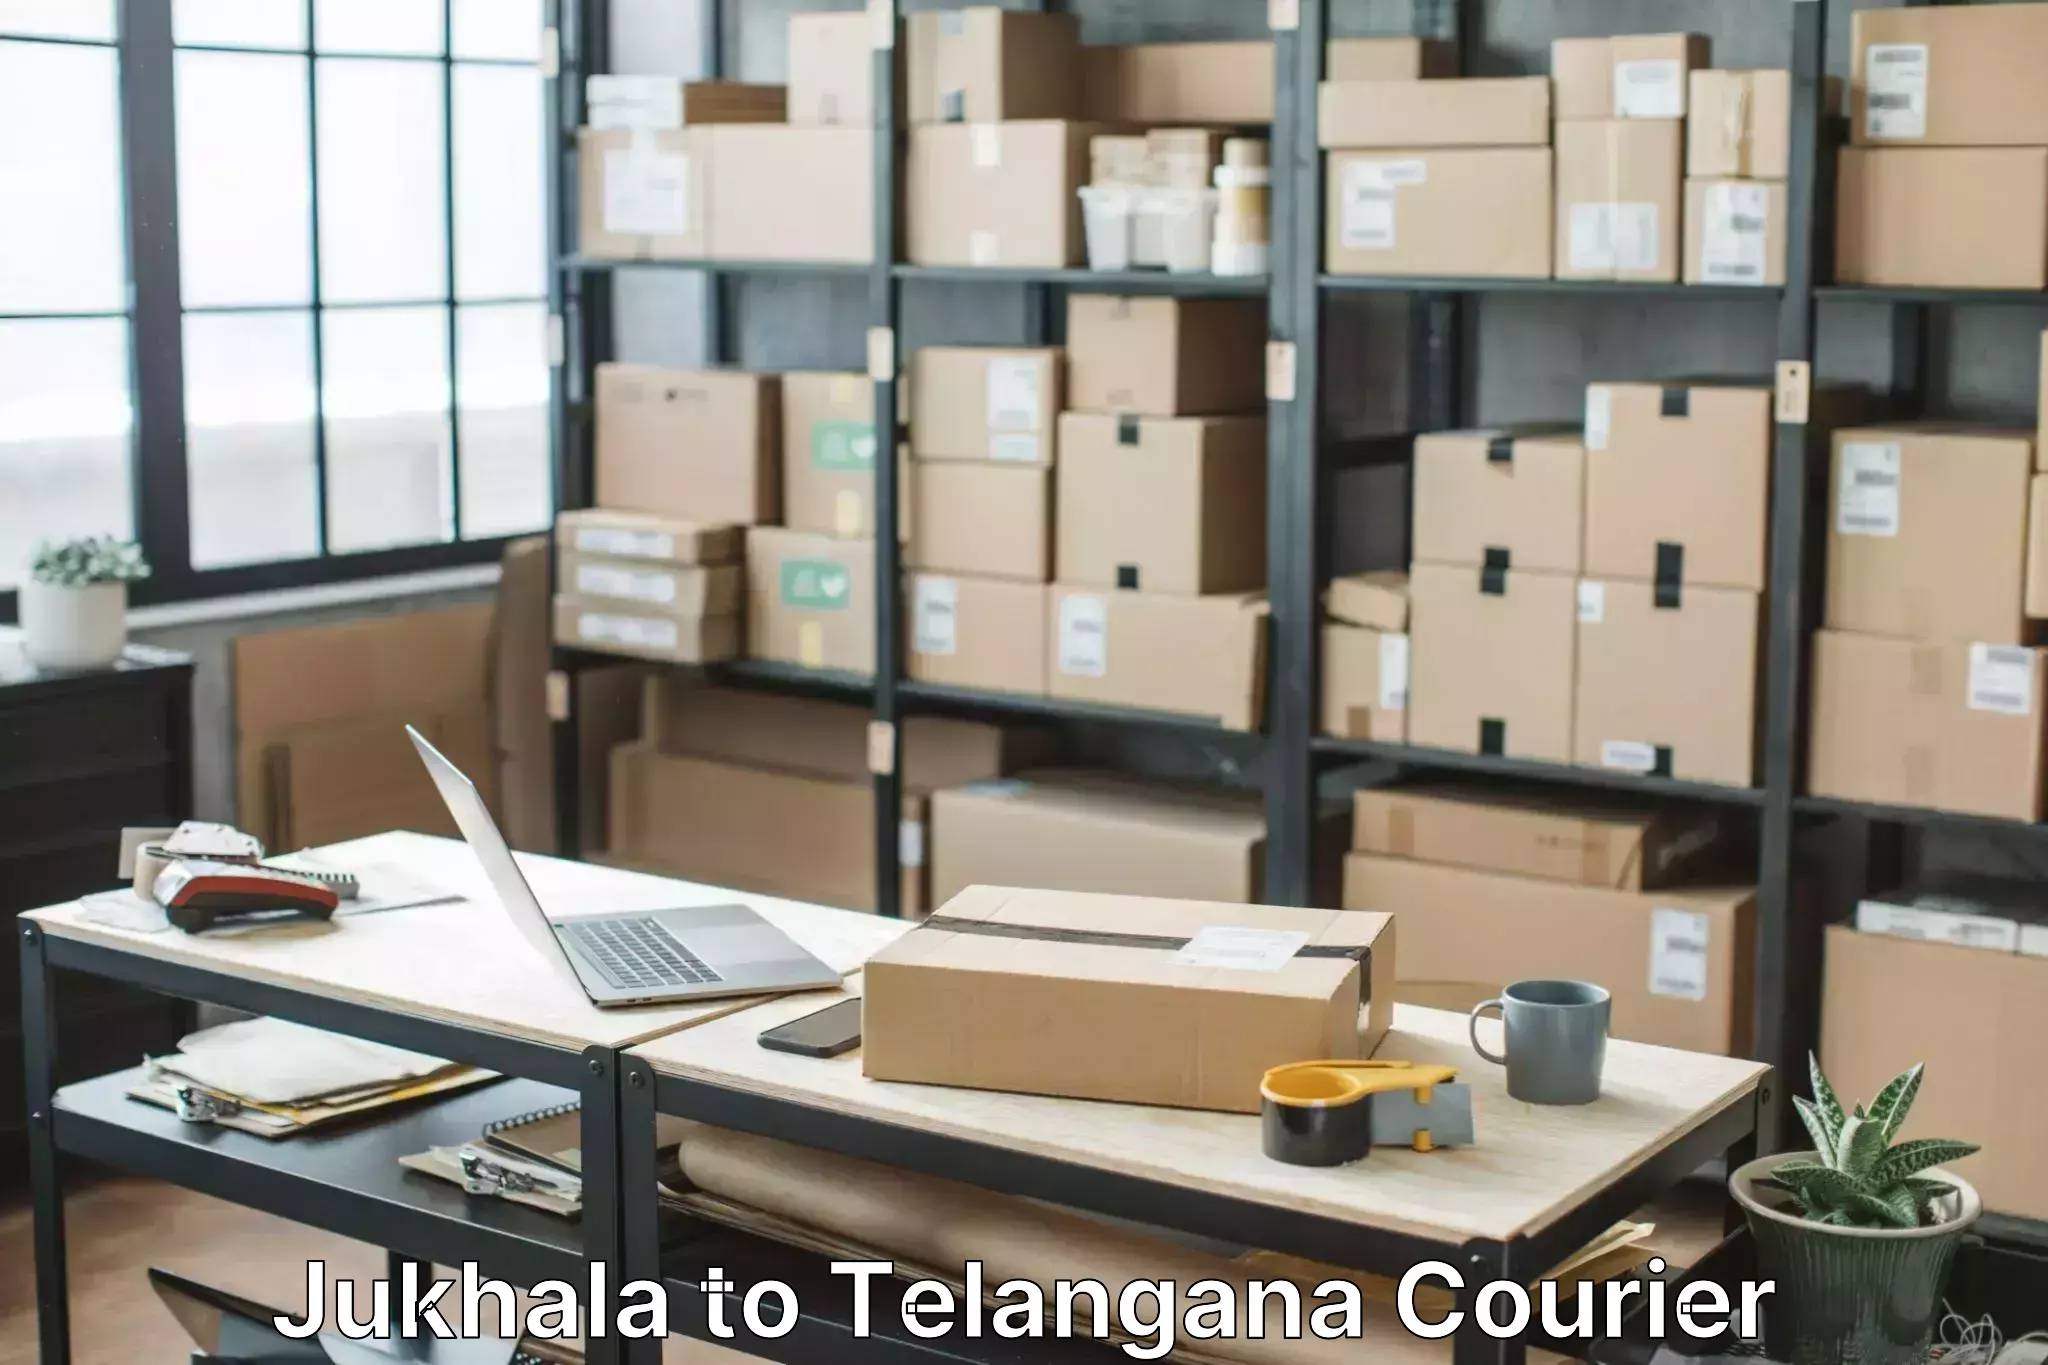 Skilled furniture transporters Jukhala to Telangana